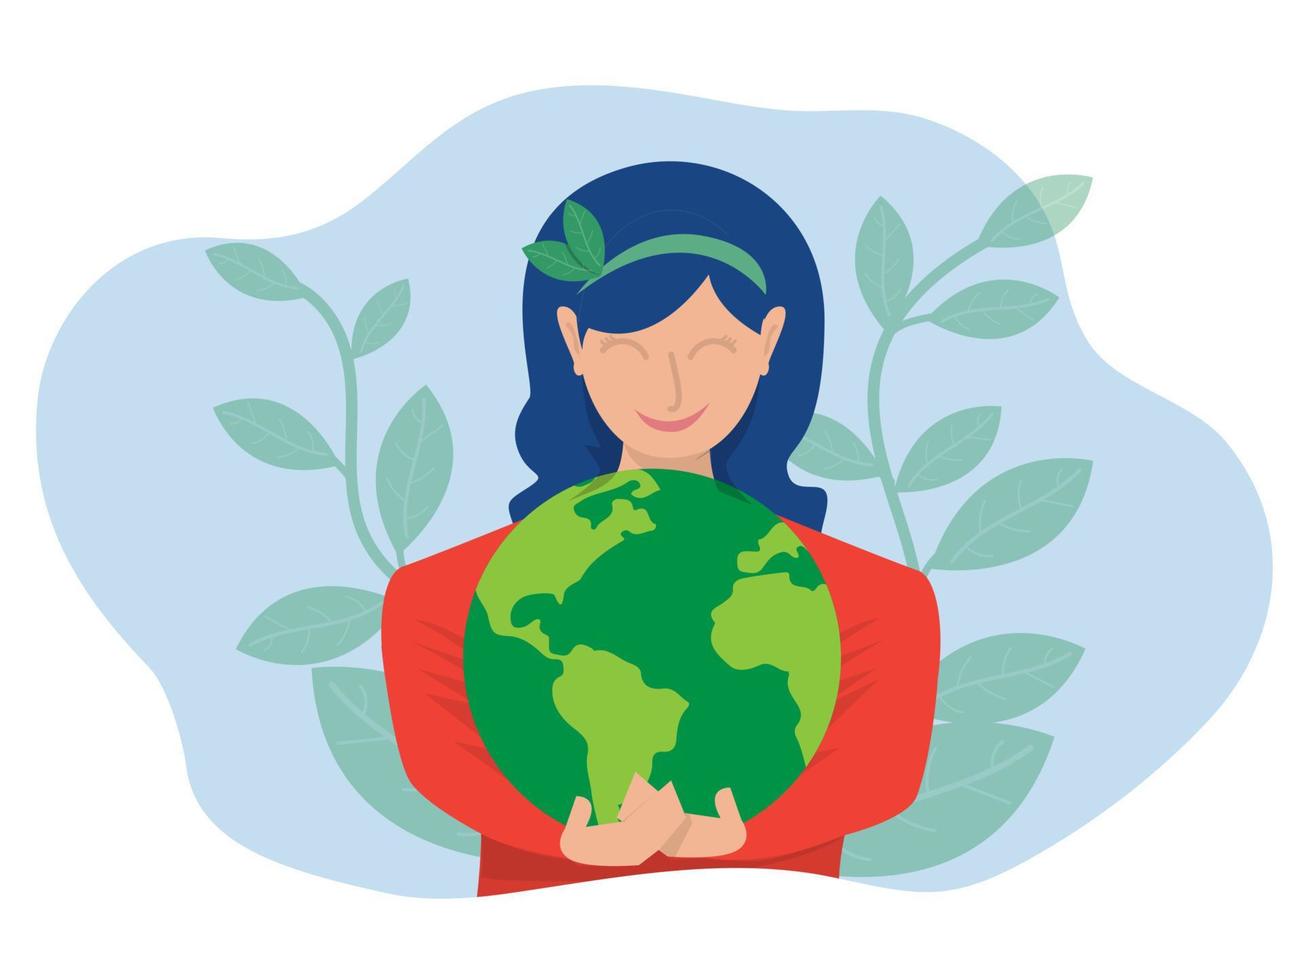 wereld aarde dag groene eco-energie, jonge vrouw omhelst de planeet aarde met wereld aarde dag en red het planeetconcept van behoud, bescherming en redelijk verbruik van natuurlijke hulpbronnen. vector